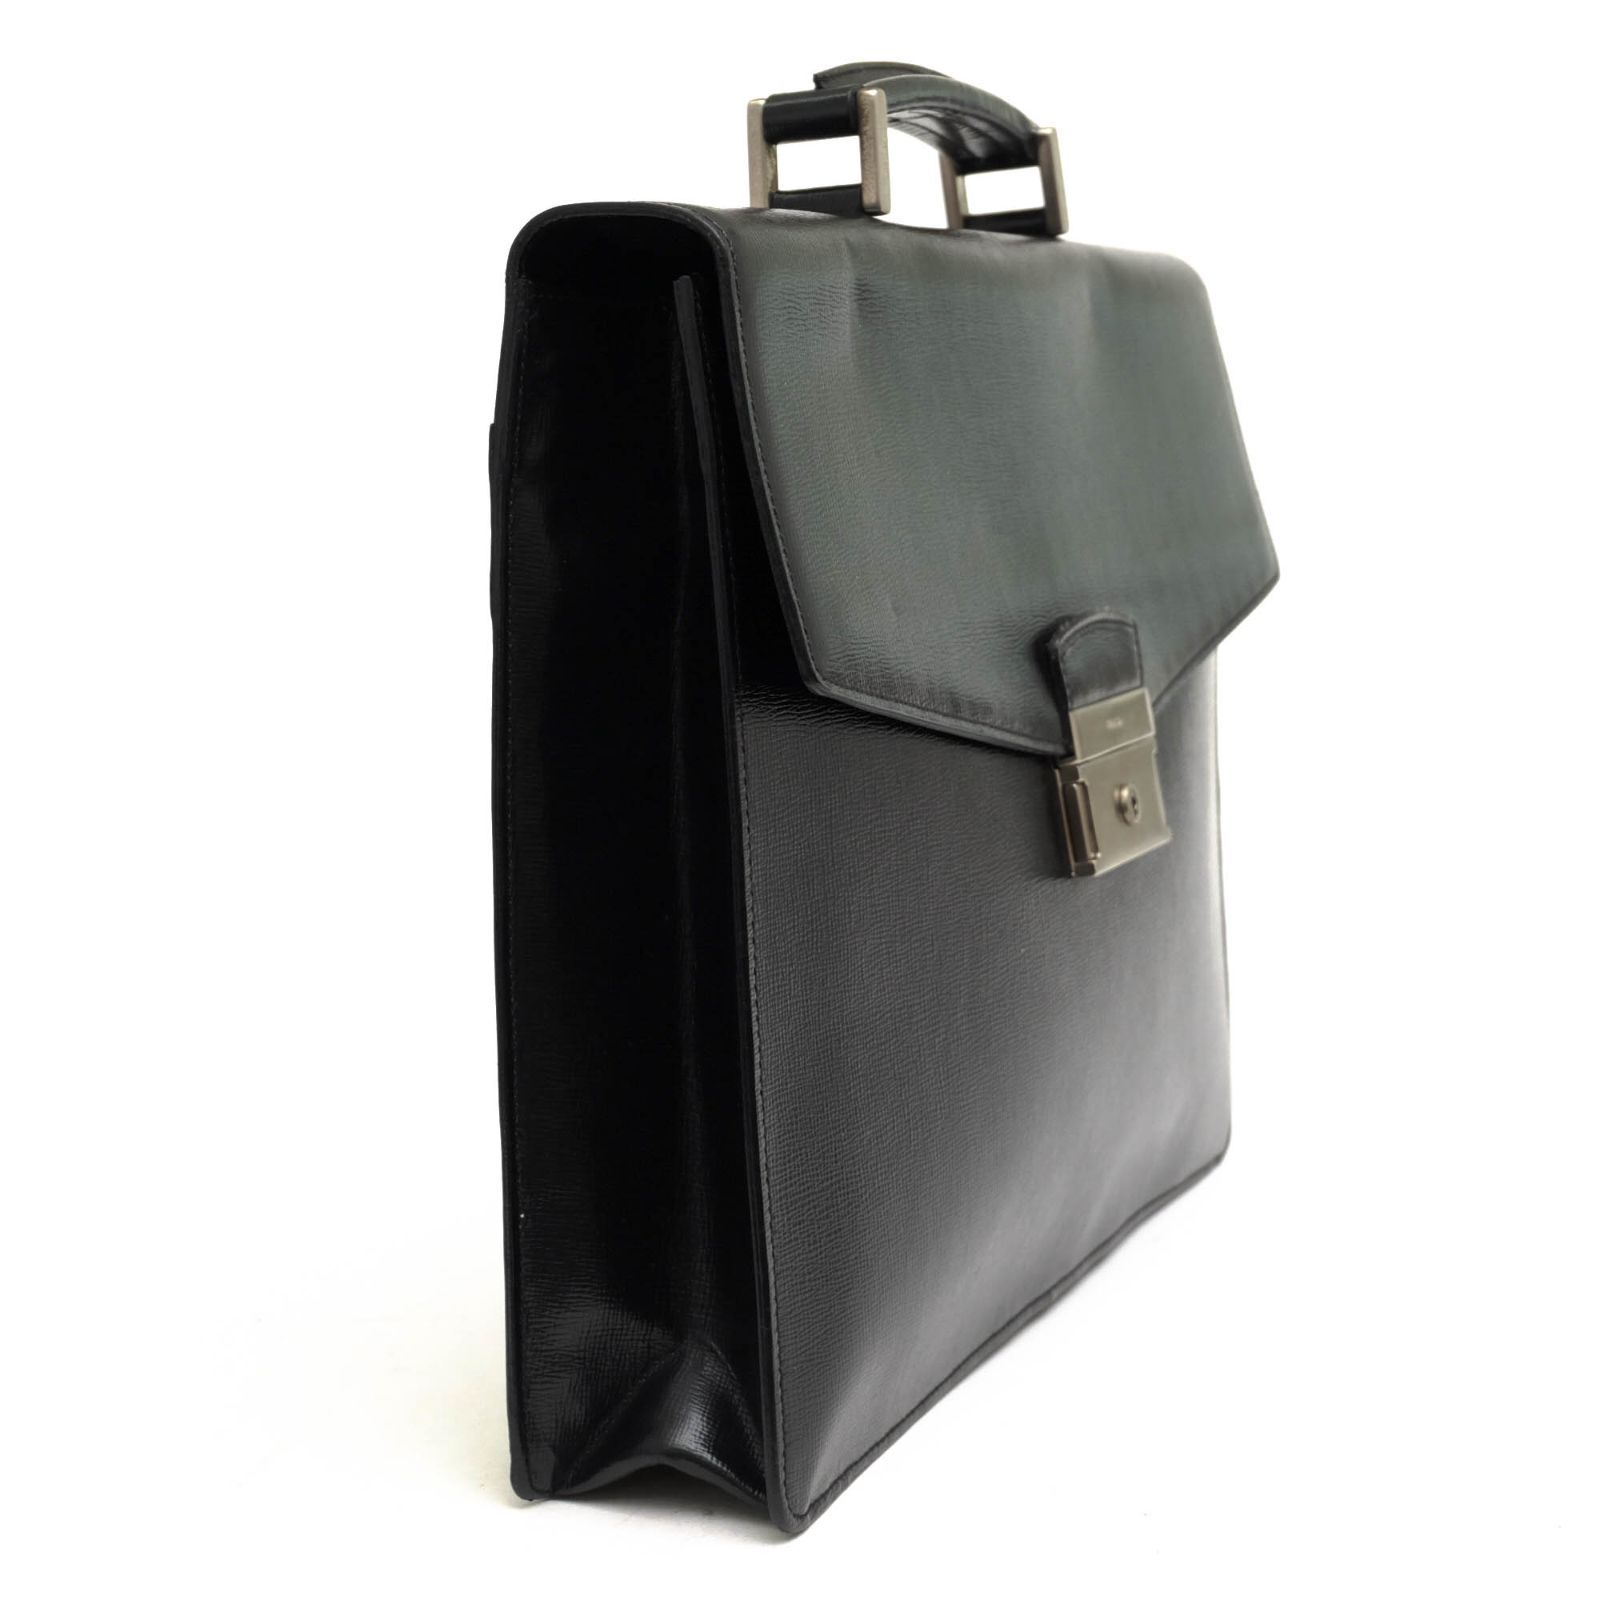 プラダ／PRADA バッグ ブリーフケース ビジネスバッグ 鞄 ビジネス メンズ 男性 男性用レザー 革 本革 ブラック 黒 フラップ式